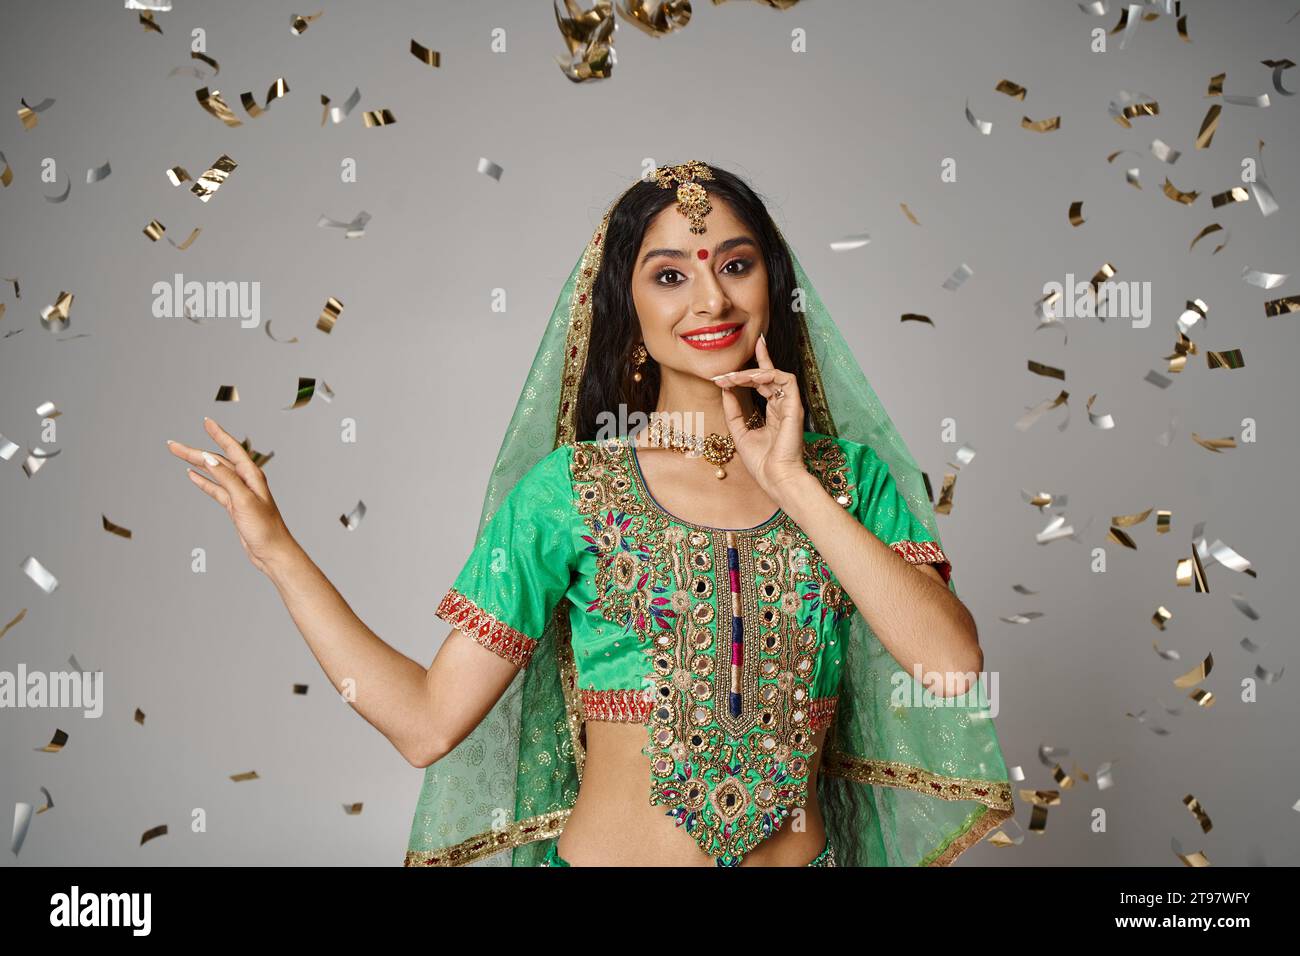 joyeuse jeune femme indienne en vêtements nationaux avec bindi et voile vert entouré de confettis Banque D'Images